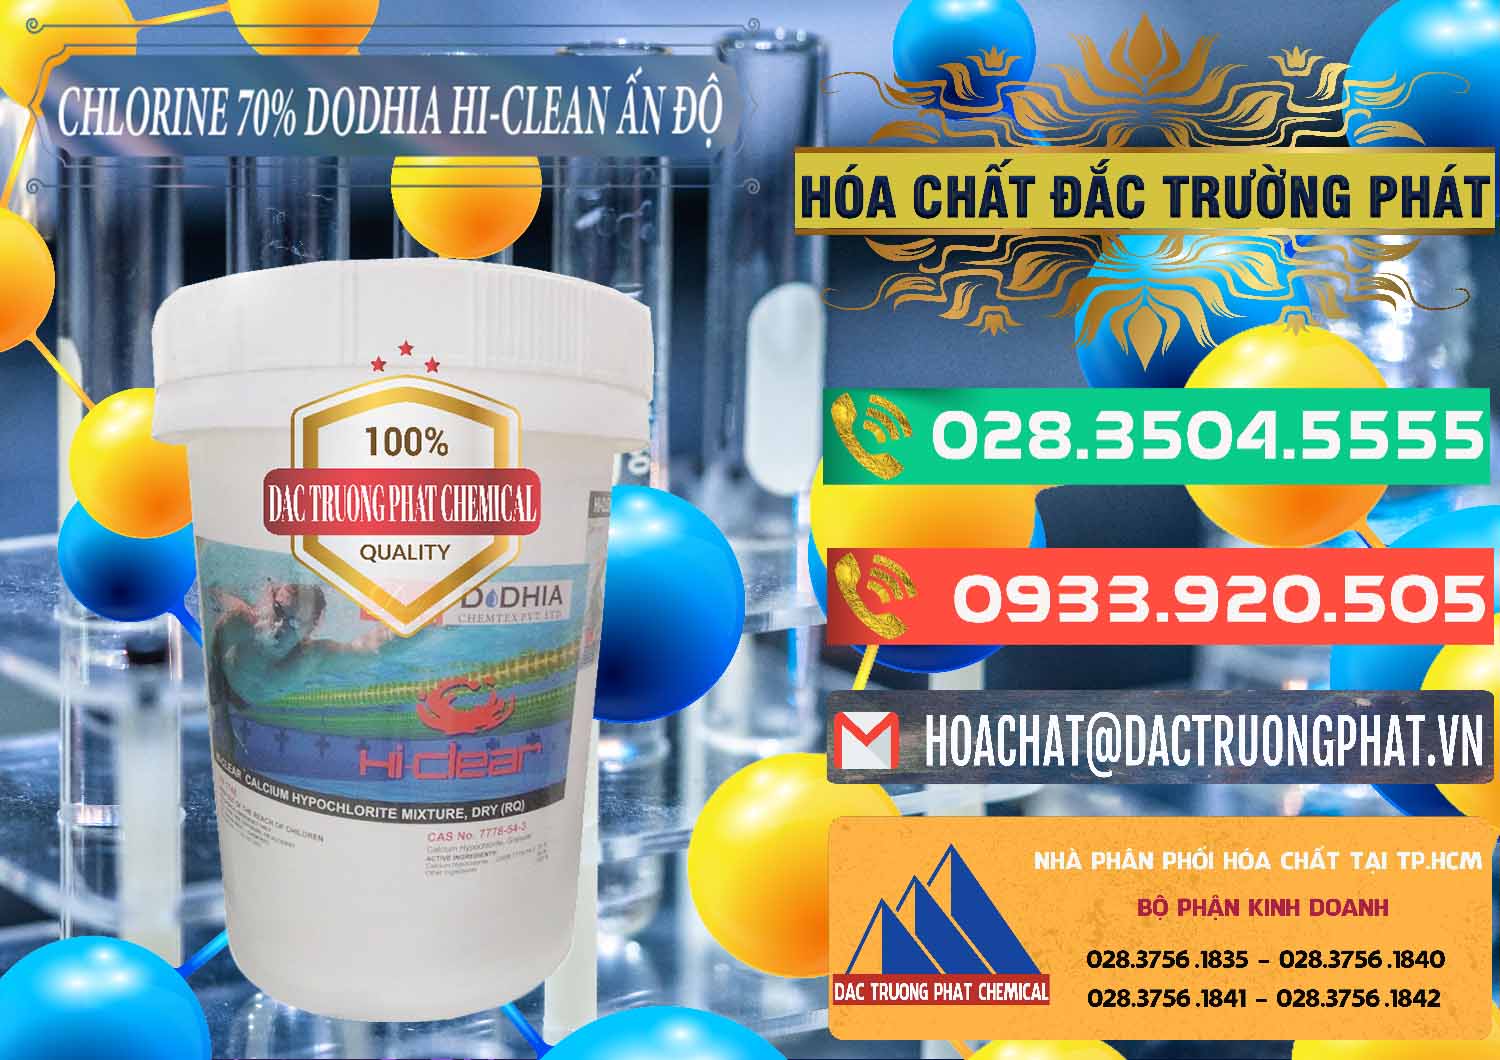 Chuyên kinh doanh và bán Chlorine – Clorin 70% Dodhia Hi-Clean Ấn Độ India - 0214 - Đơn vị chuyên kinh doanh - phân phối hóa chất tại TP.HCM - congtyhoachat.com.vn